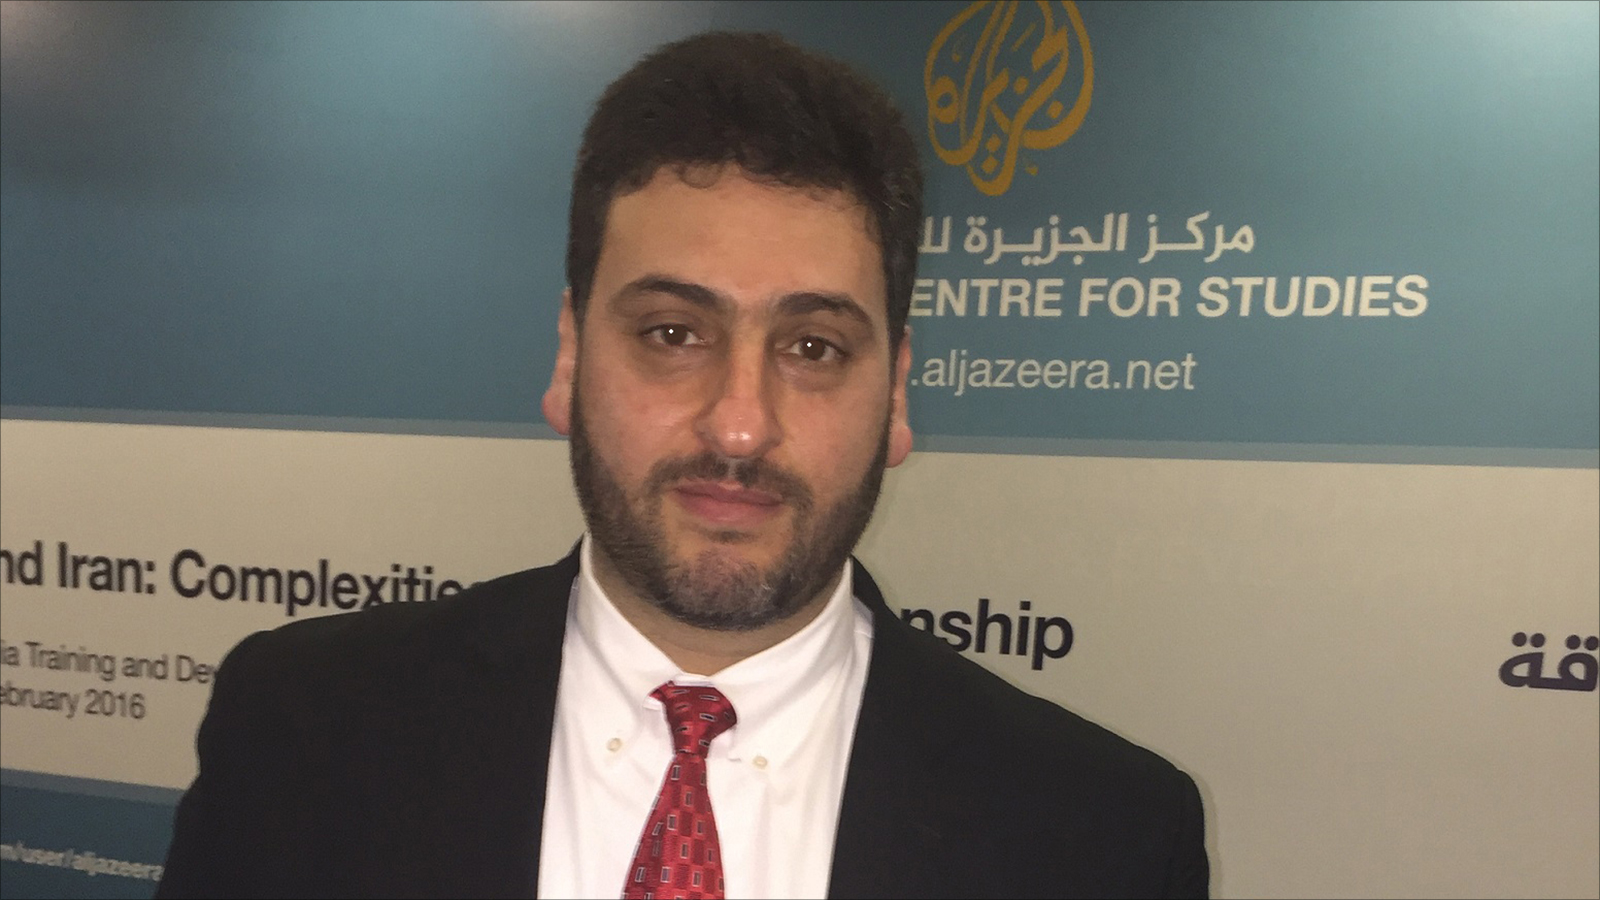  أبو ارشيد: قرار ترمب ضربة قوية للمشروع السياسي الفلسطيني (الجزيرة)